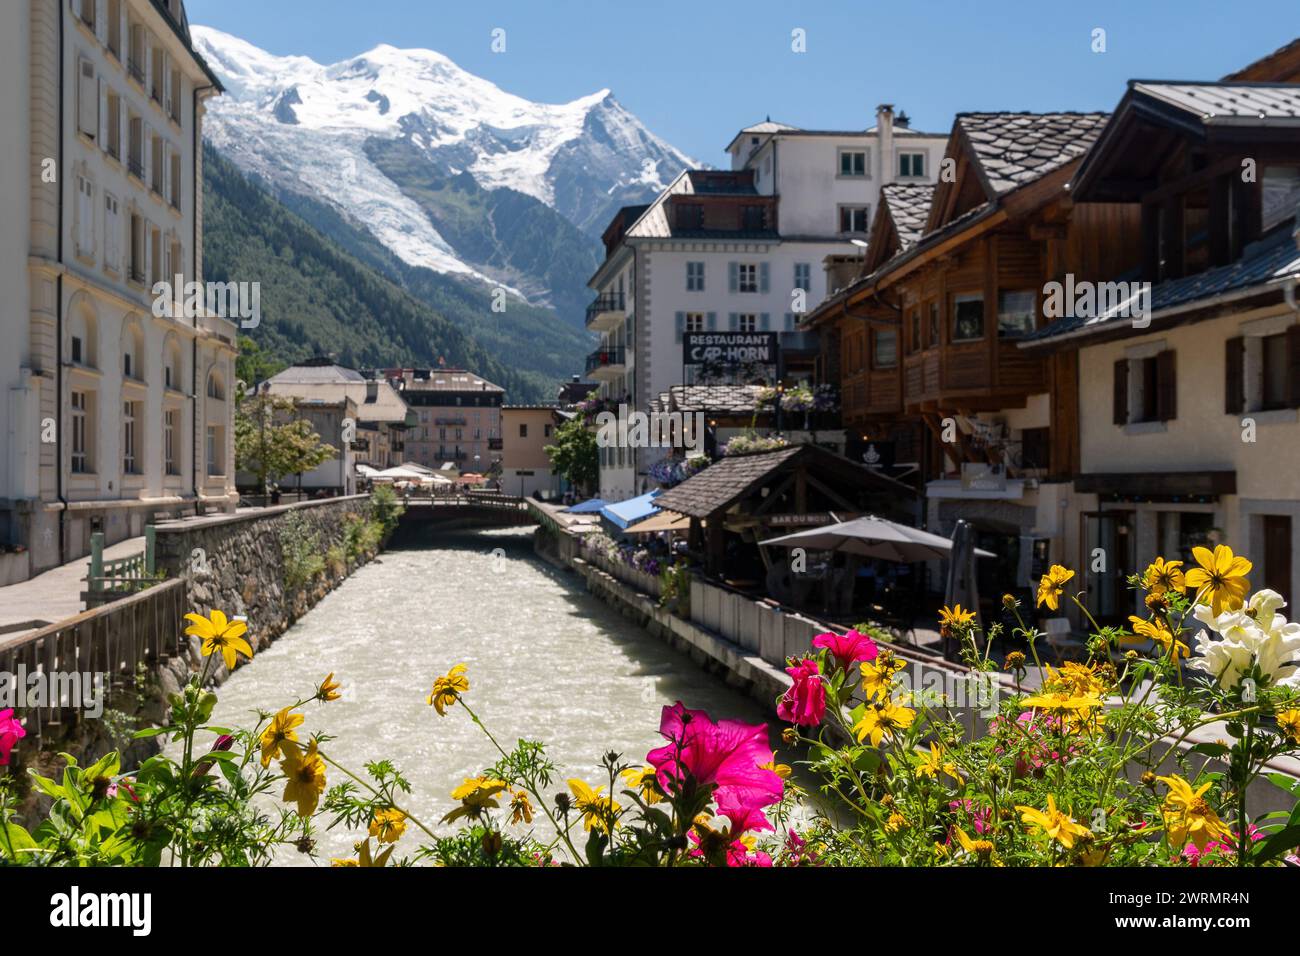 Il fiume Arve, un torrente alpino che attraversa la famosa località sciistica, con il Monte bianco sullo sfondo, Chamonix, alta Savoia, Francia Foto Stock